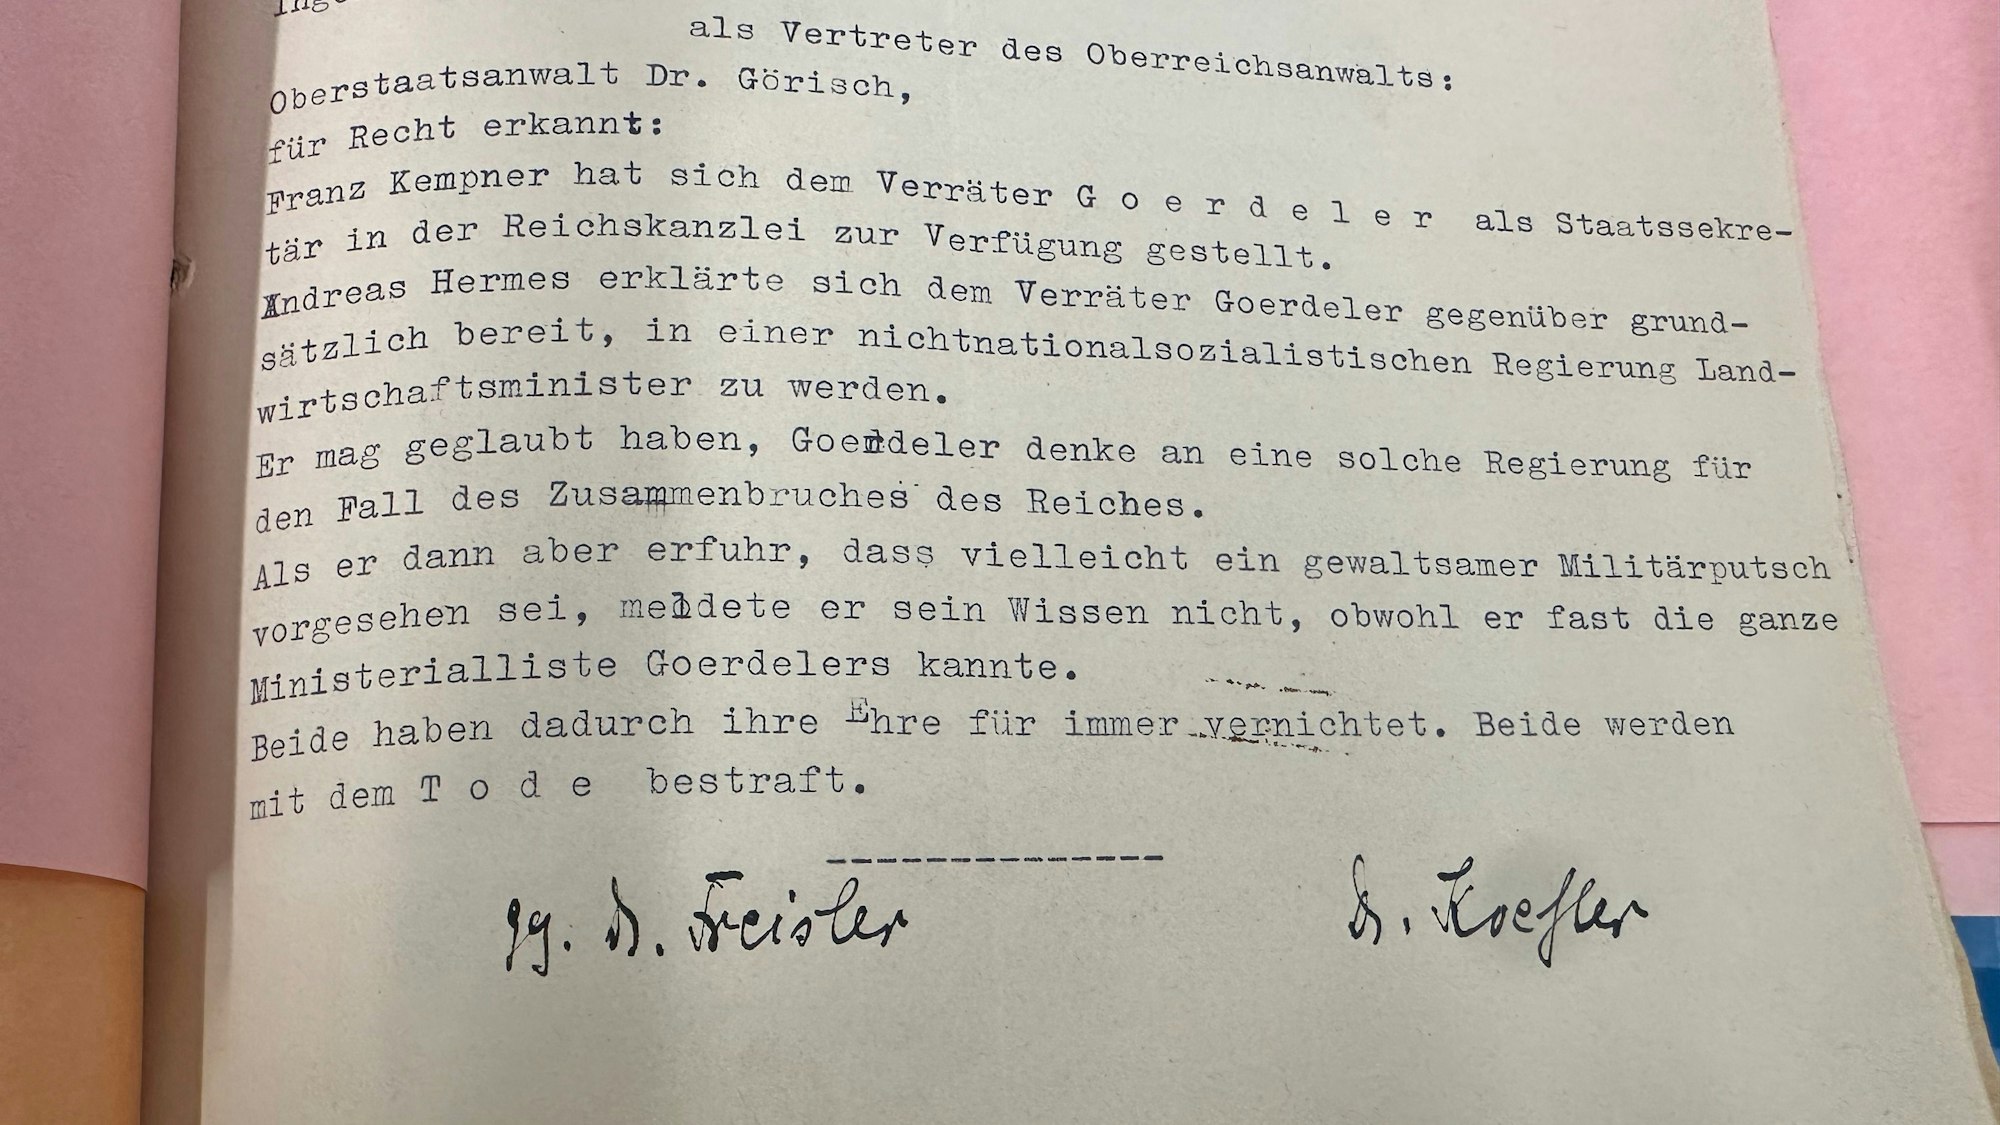 Das Todesurteil gegen Andreas Hermes und Franz Kemper nach dem Attentatsversuch auf Adolf Hitler am 20. Juli 1944 umfasst nur eine DIN-A-4-Seite.